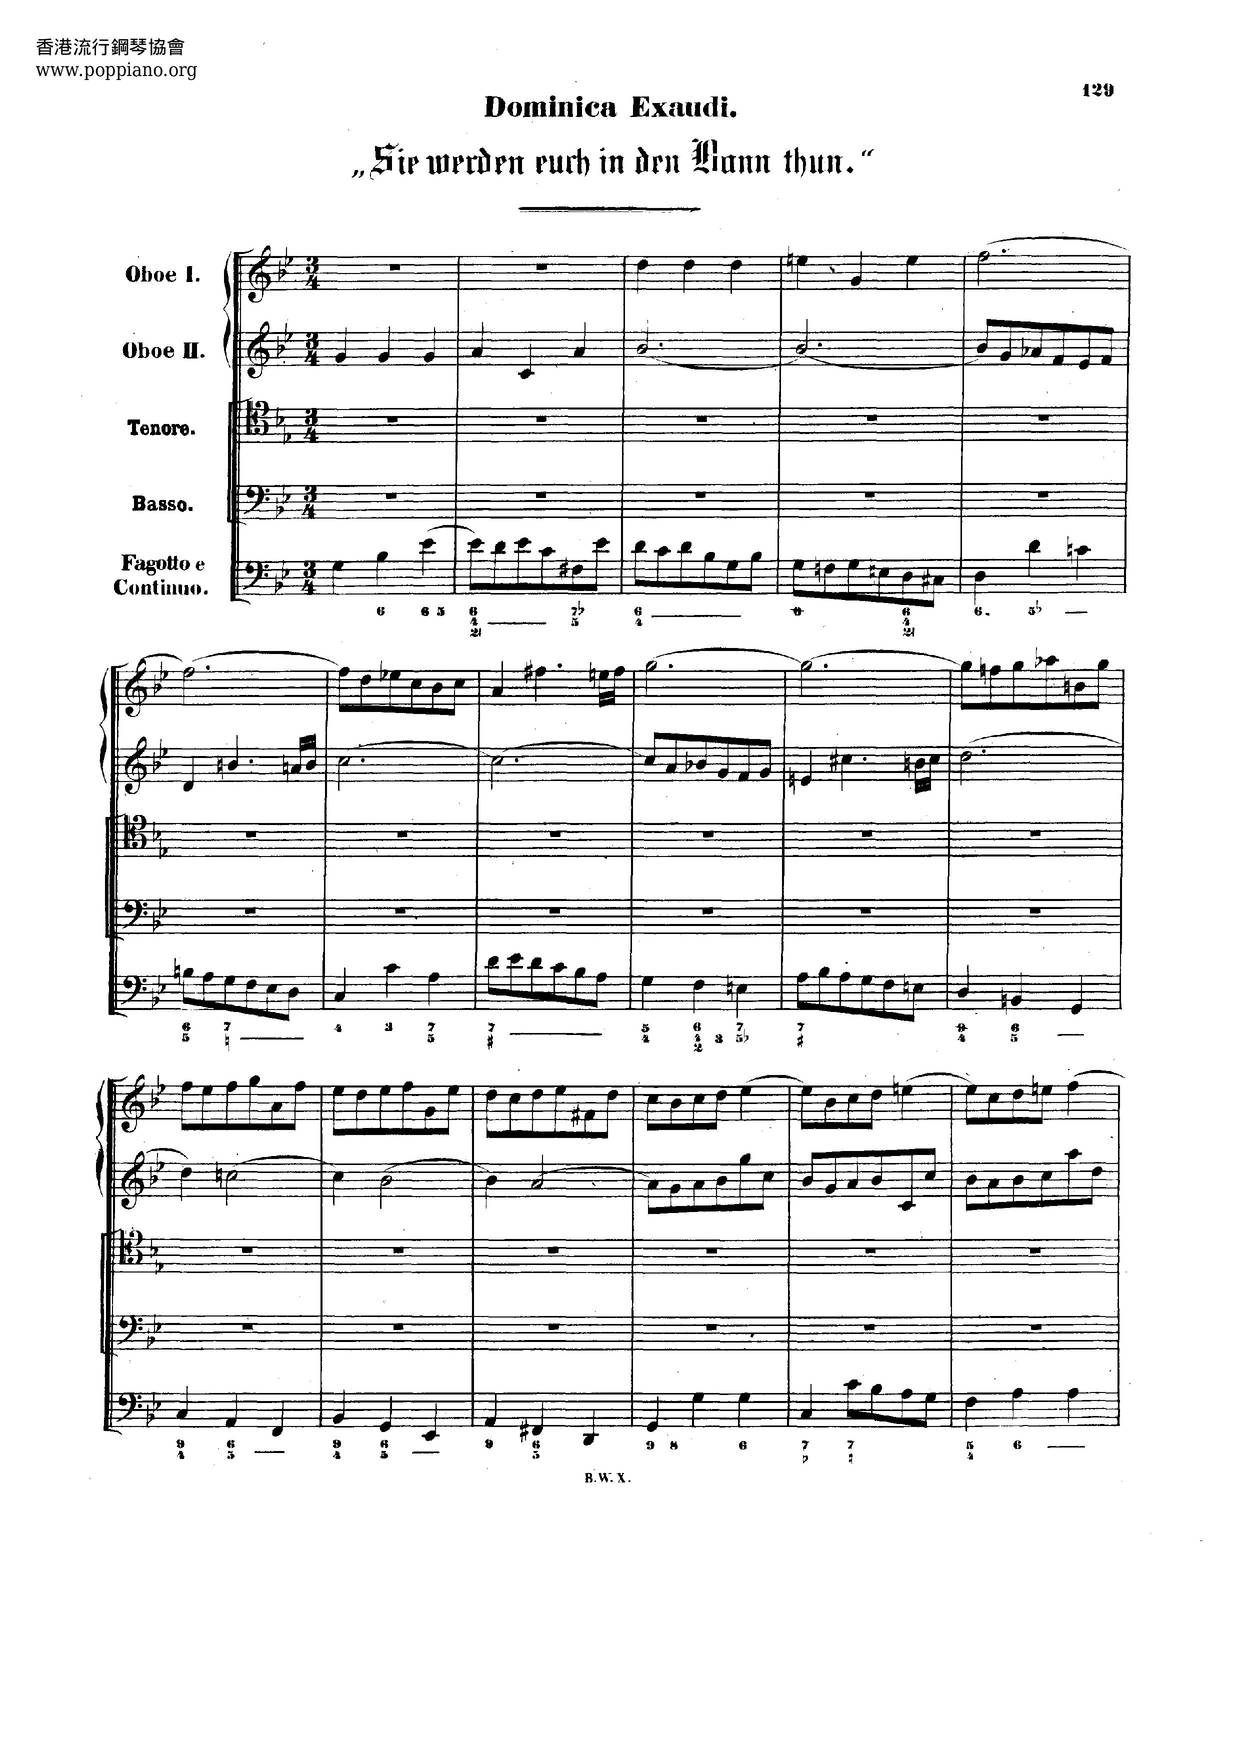 Sie Werden Euch In Den Bann Thun, BWV 44ピアノ譜